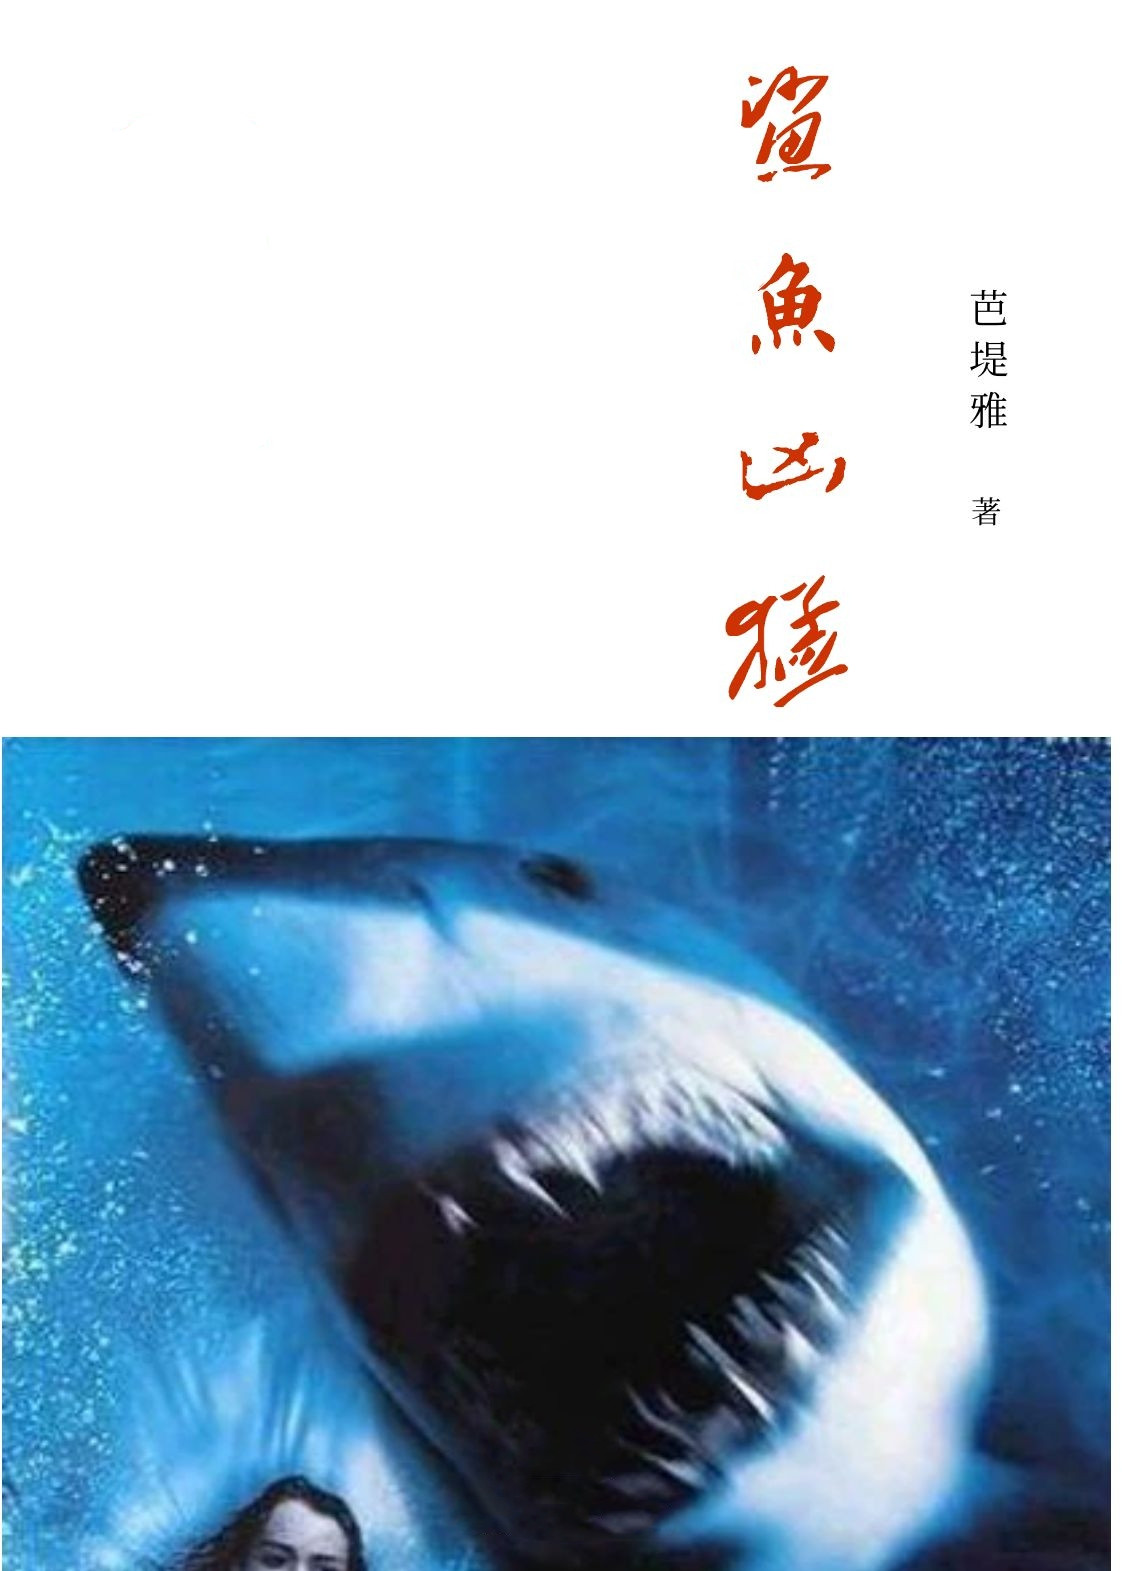 鲨鱼凶猛